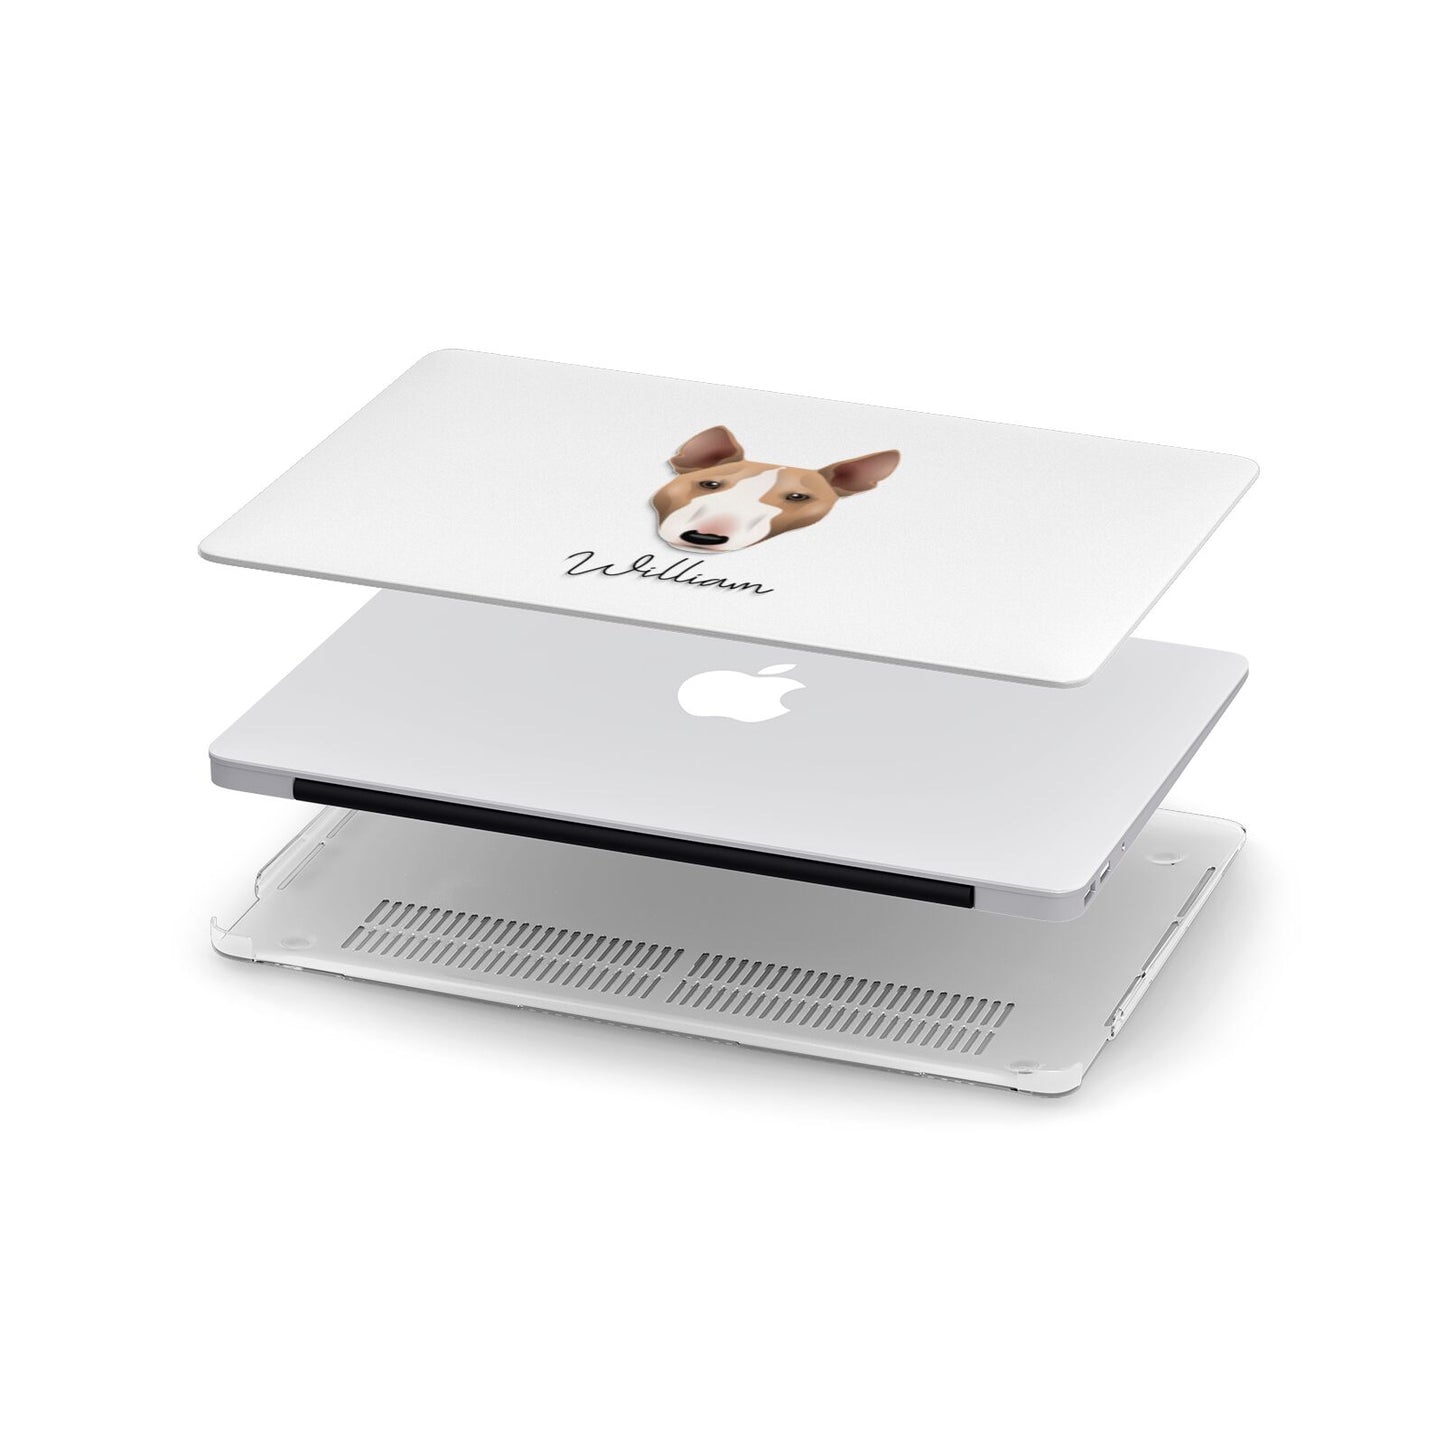 Miniature Bull Terrier Personalised Apple MacBook Case in Detail